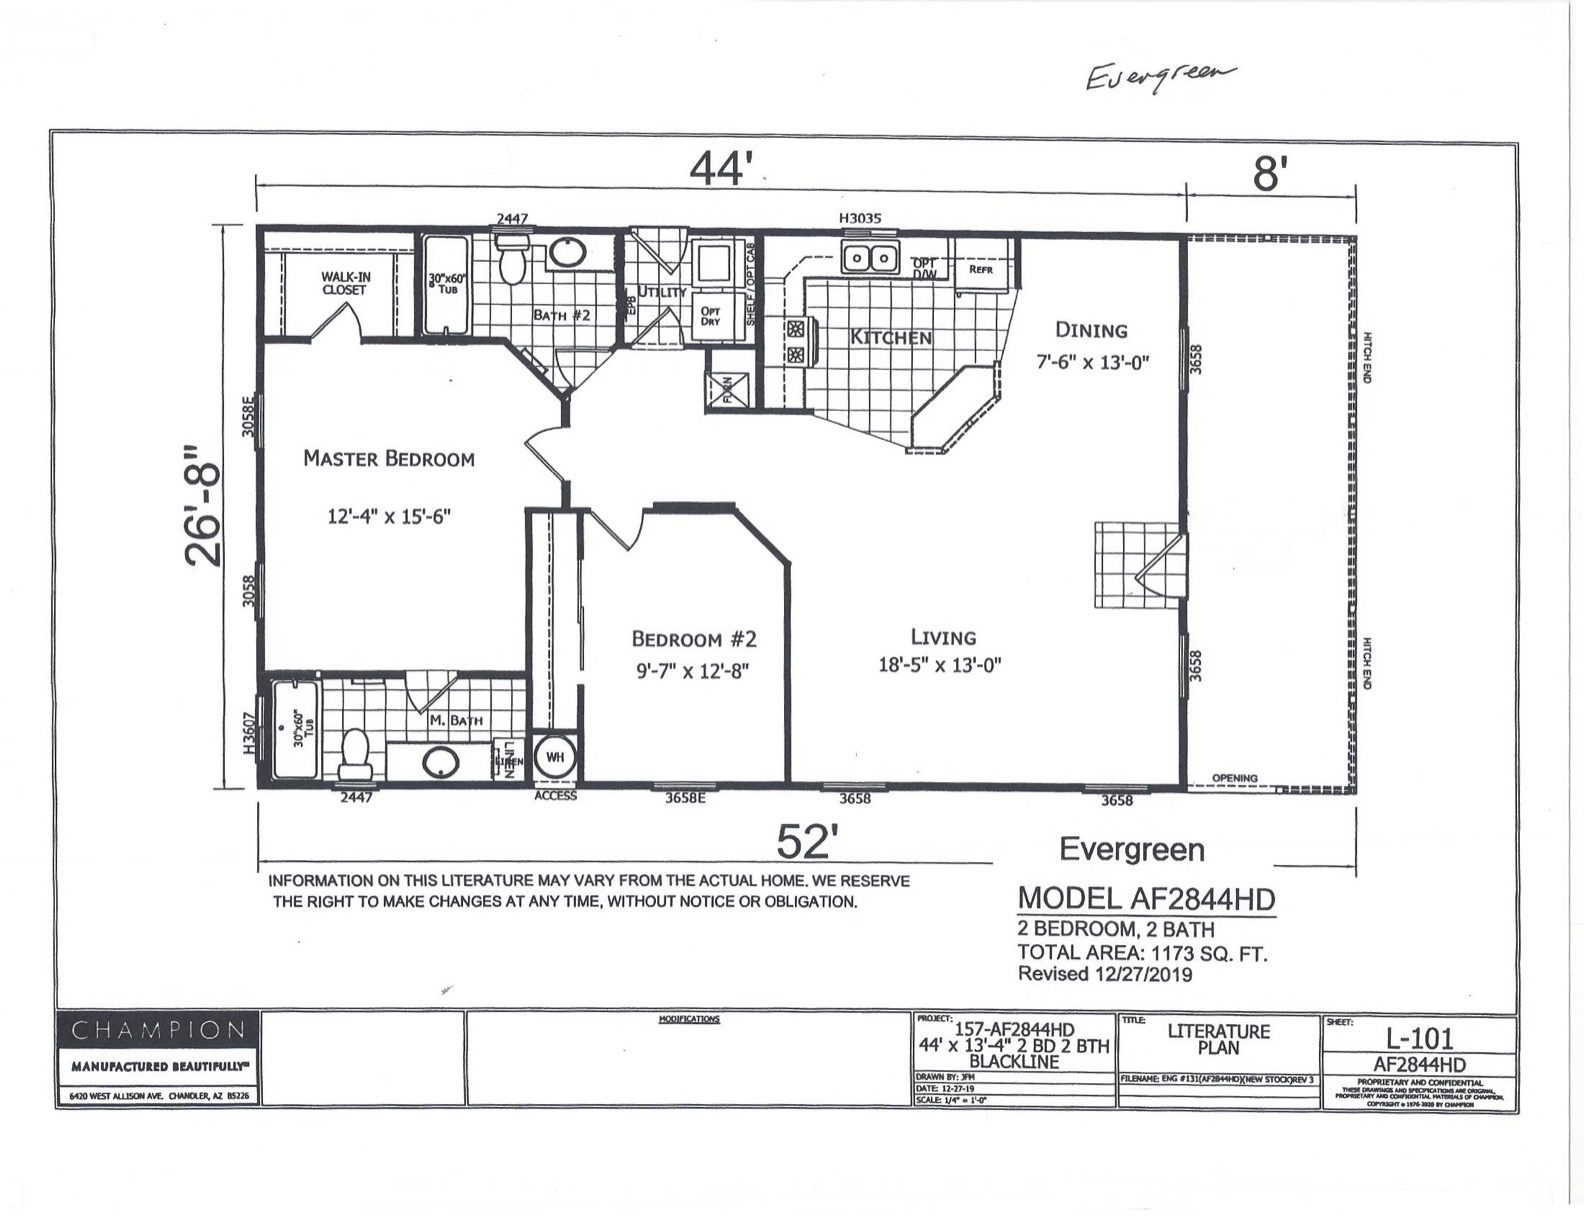 Homes Direct Modular Homes - Model AF2844HD - Floorplan